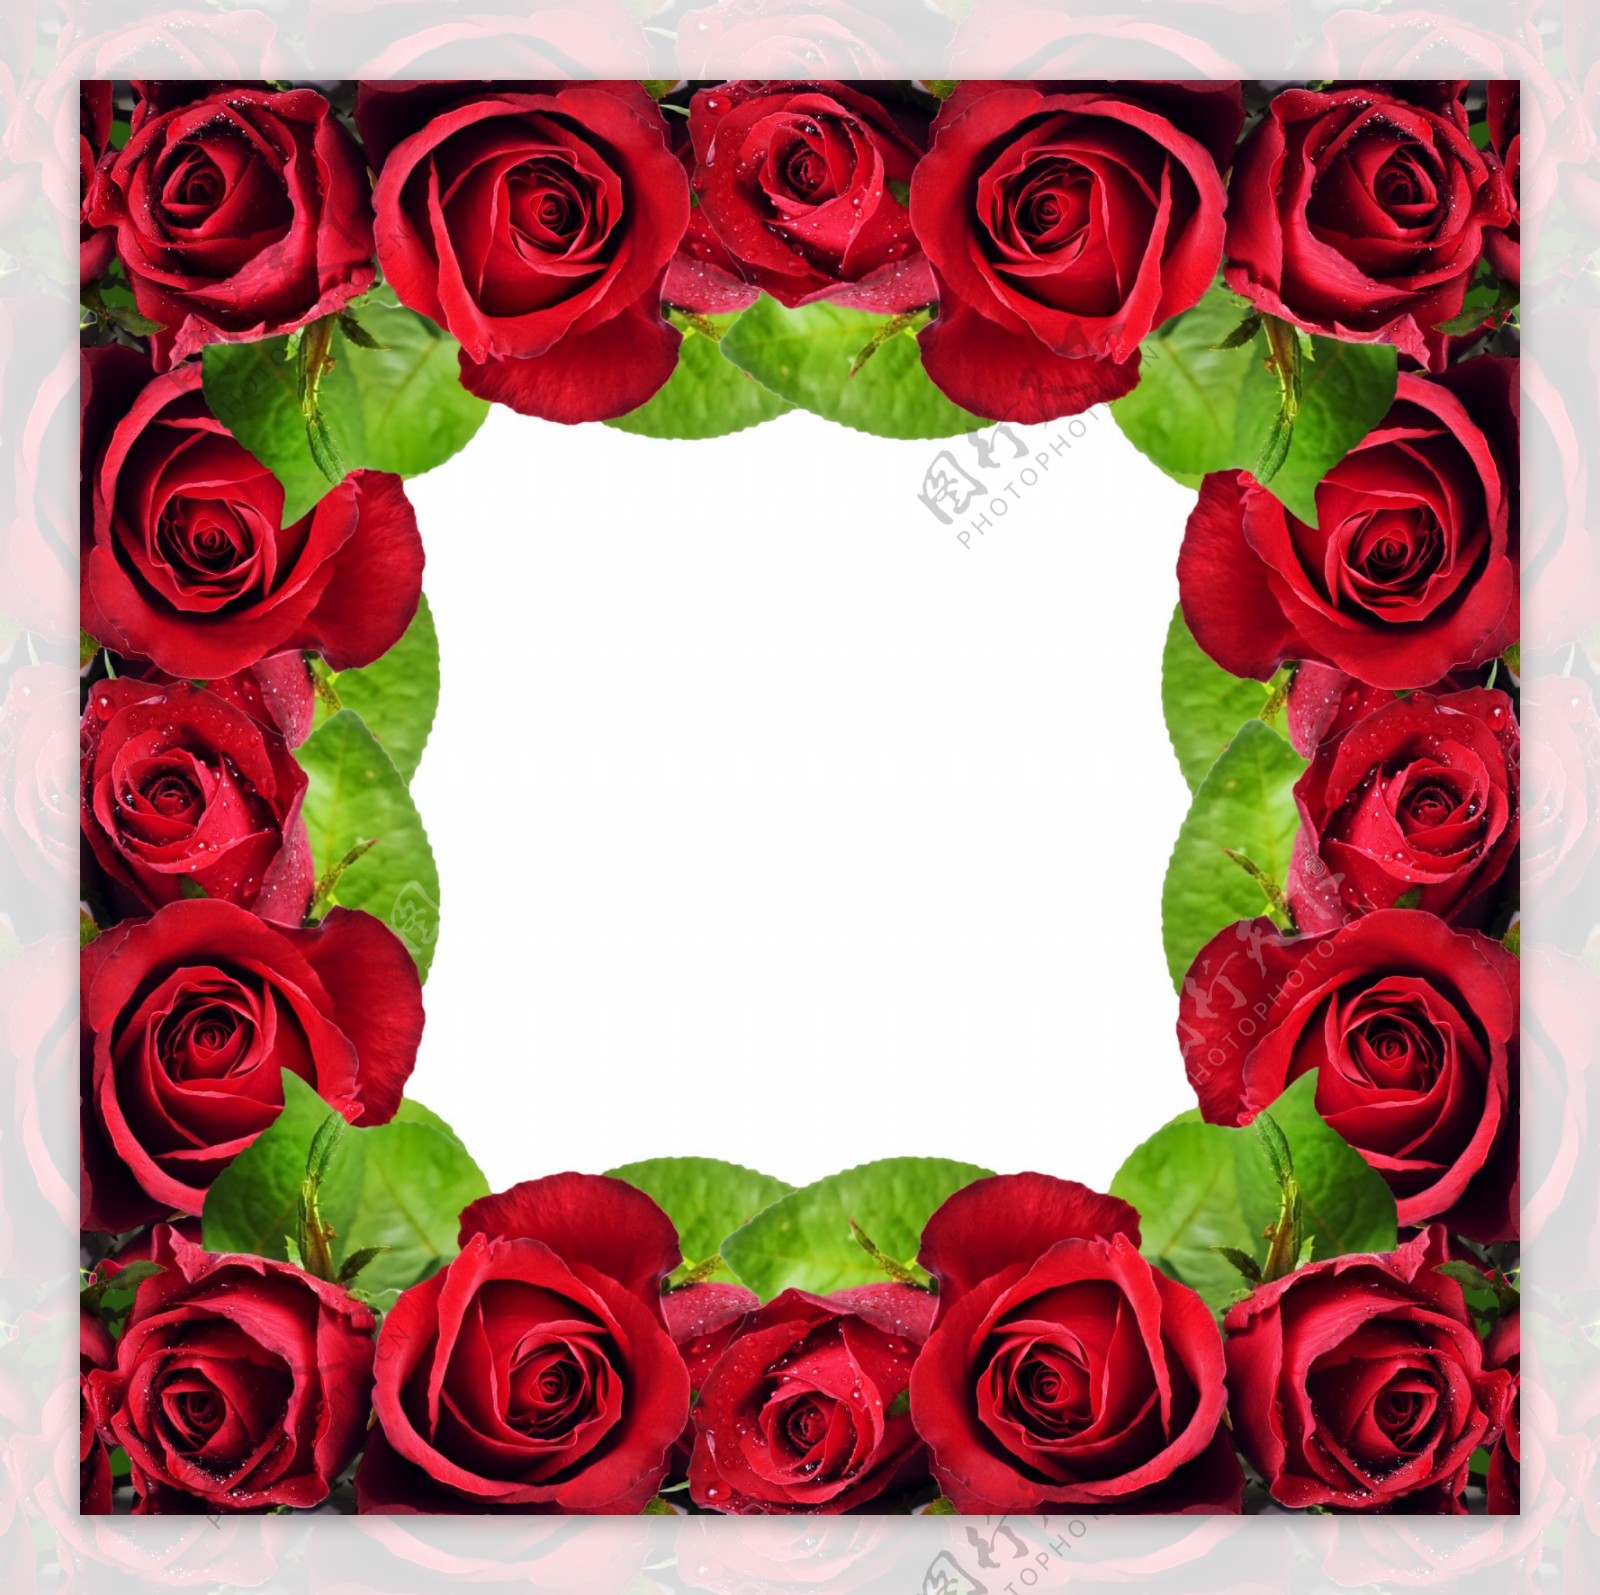 红玫瑰水珠水滴图片